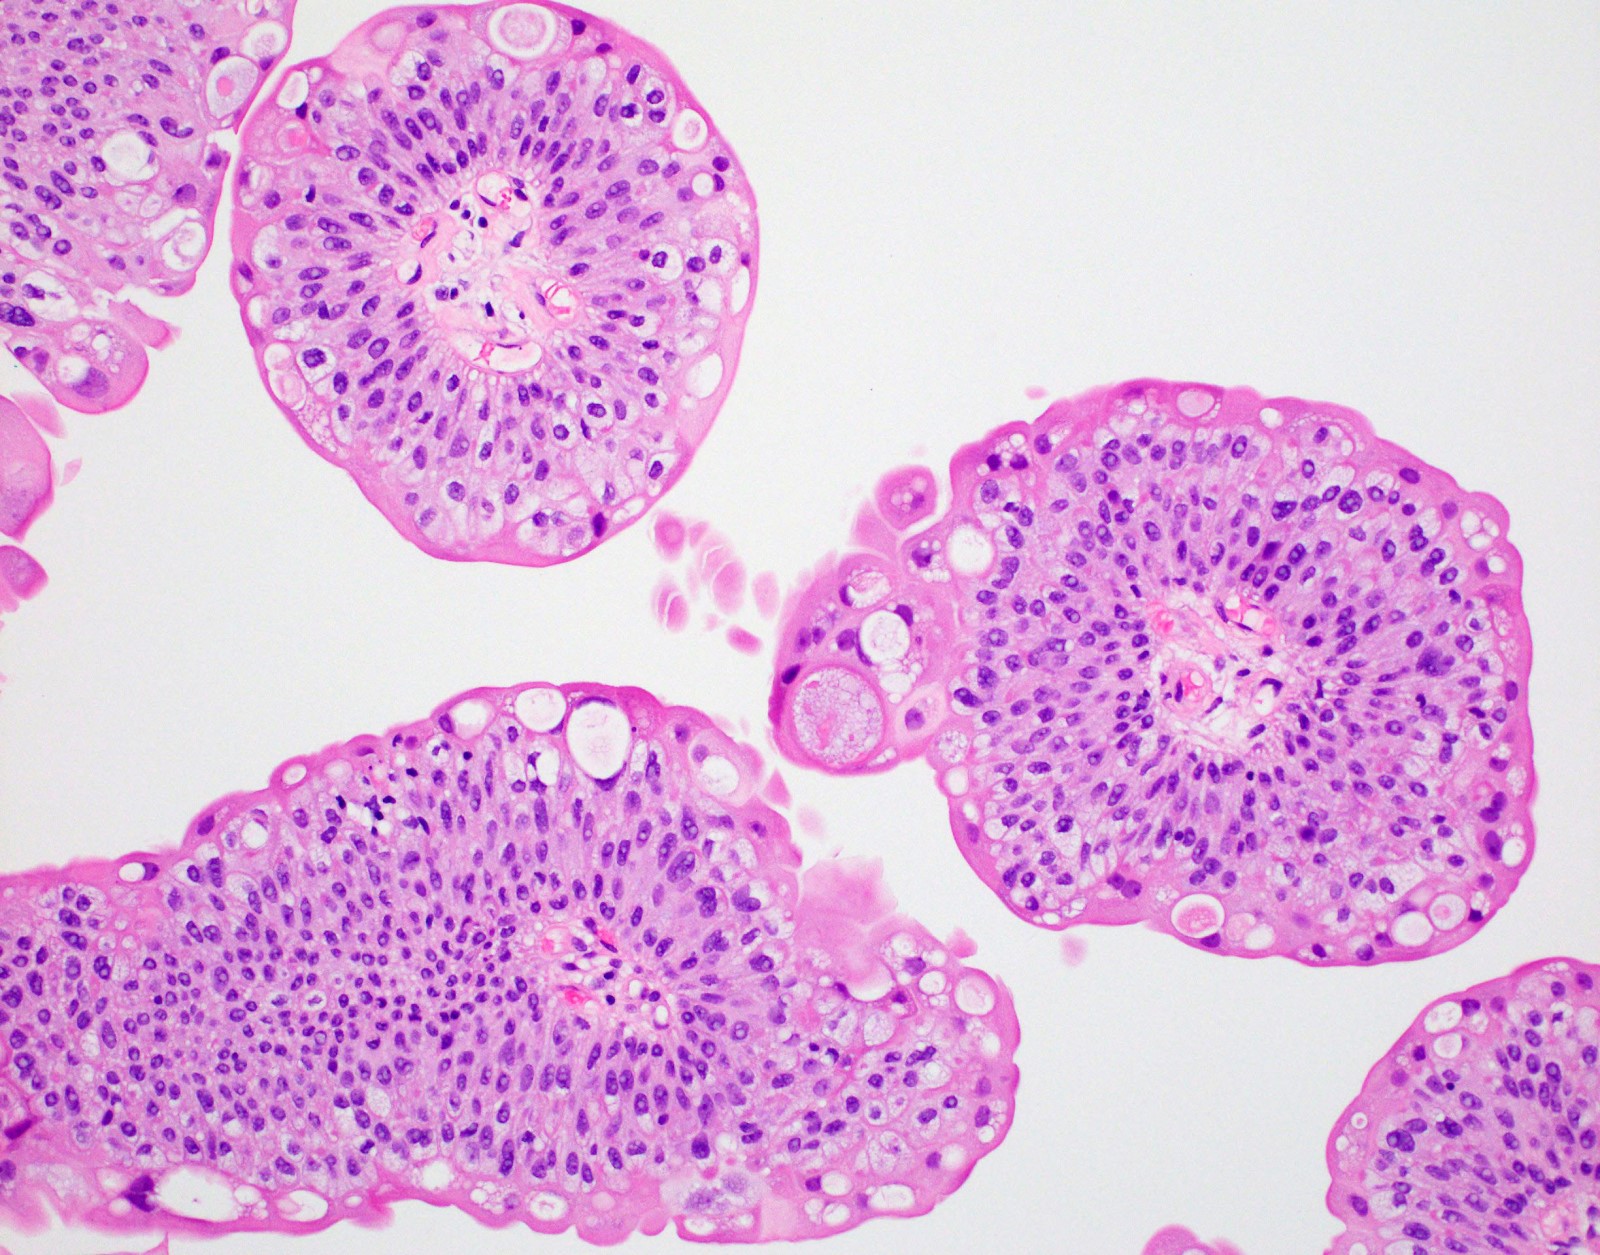 papillomatosis bladder